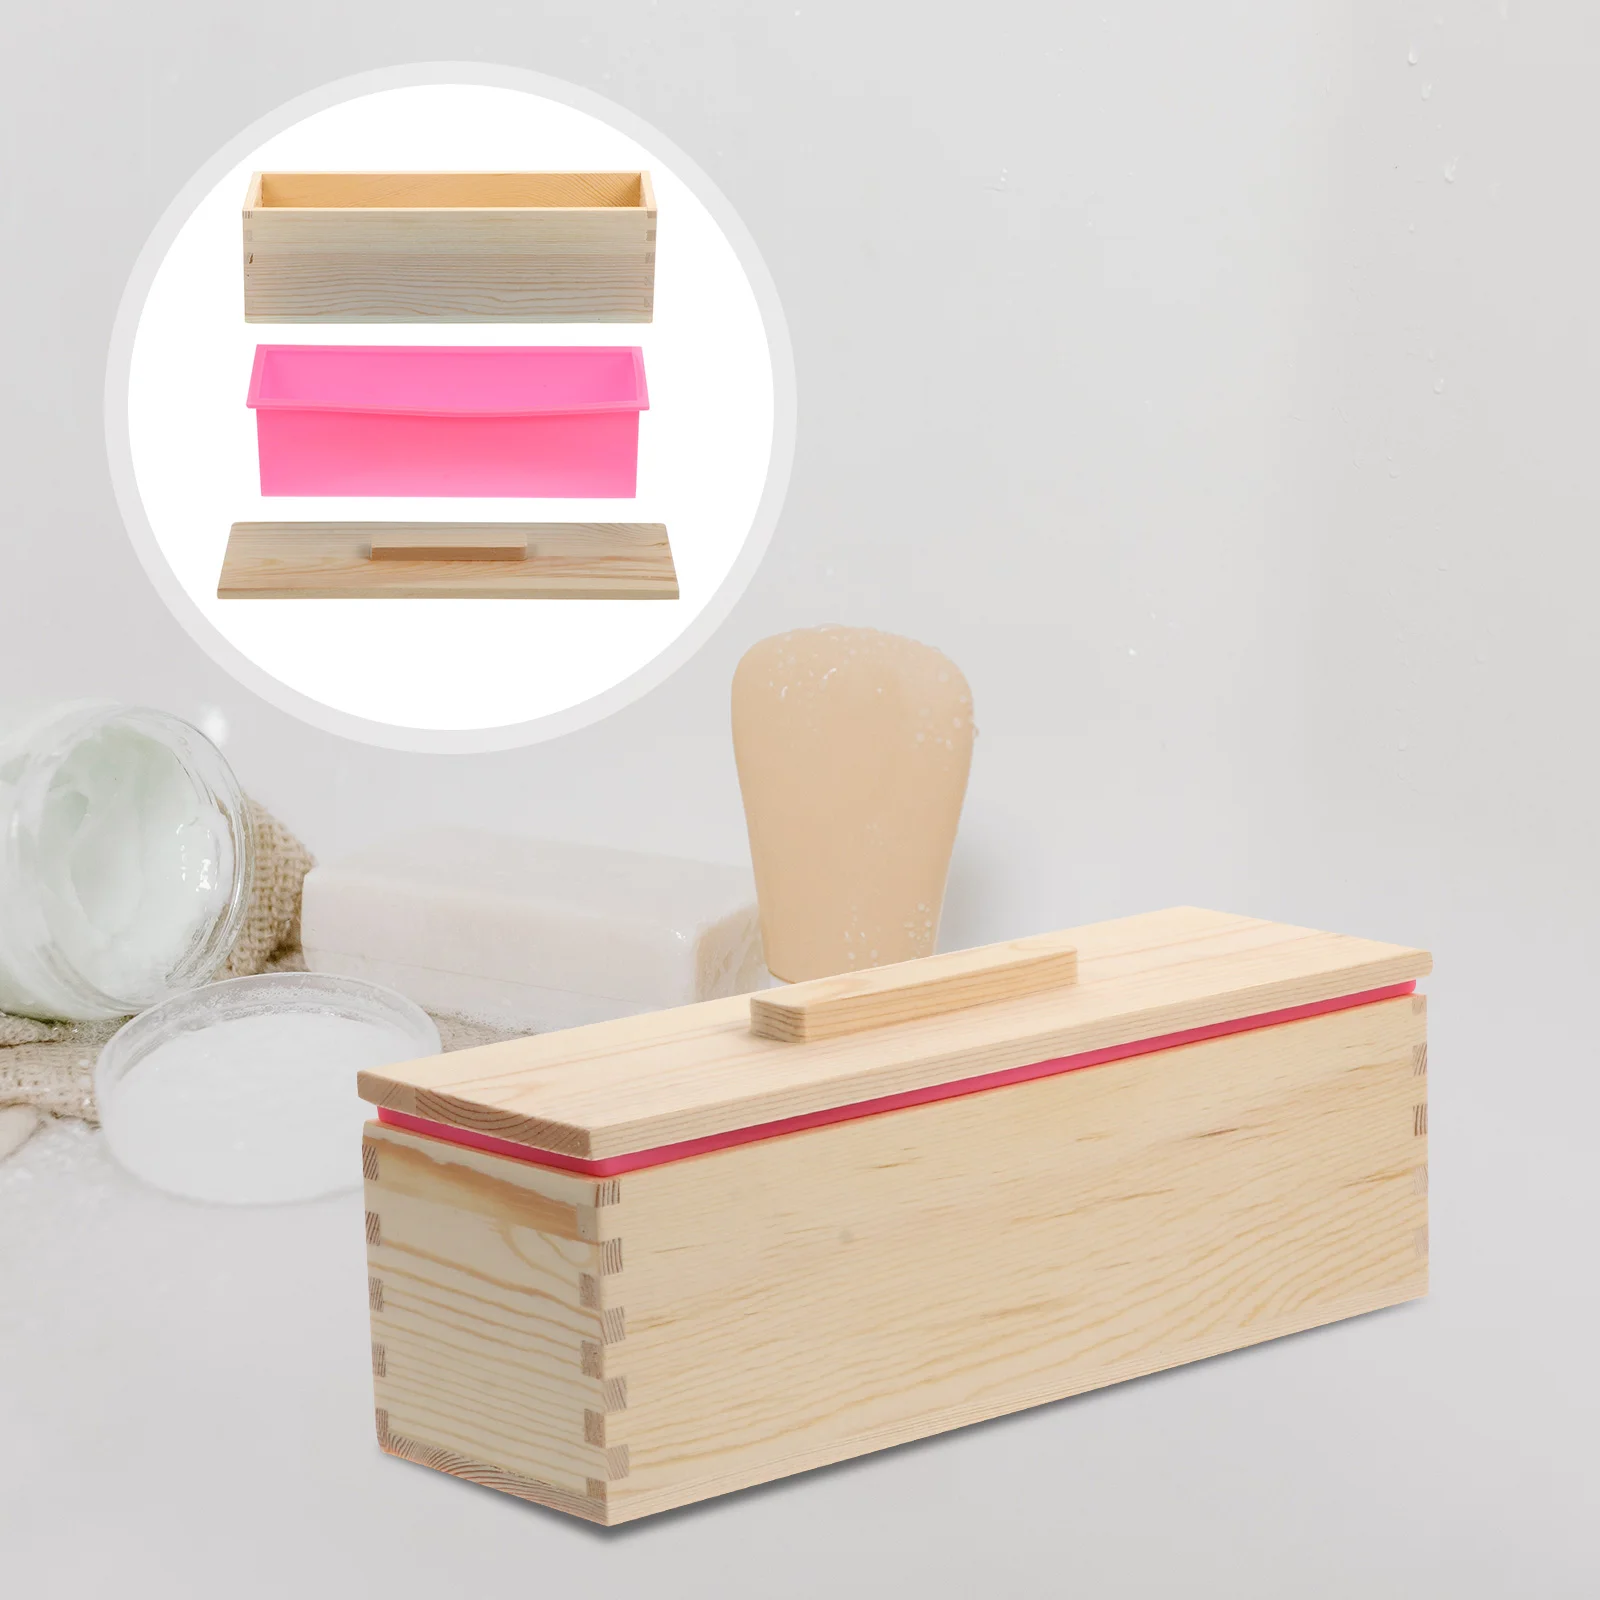 

Деревянная Коробка для мыла, форма, Коробка для мыла с гладкой поверхностью, форма, практичная Коробка для мыла, форма